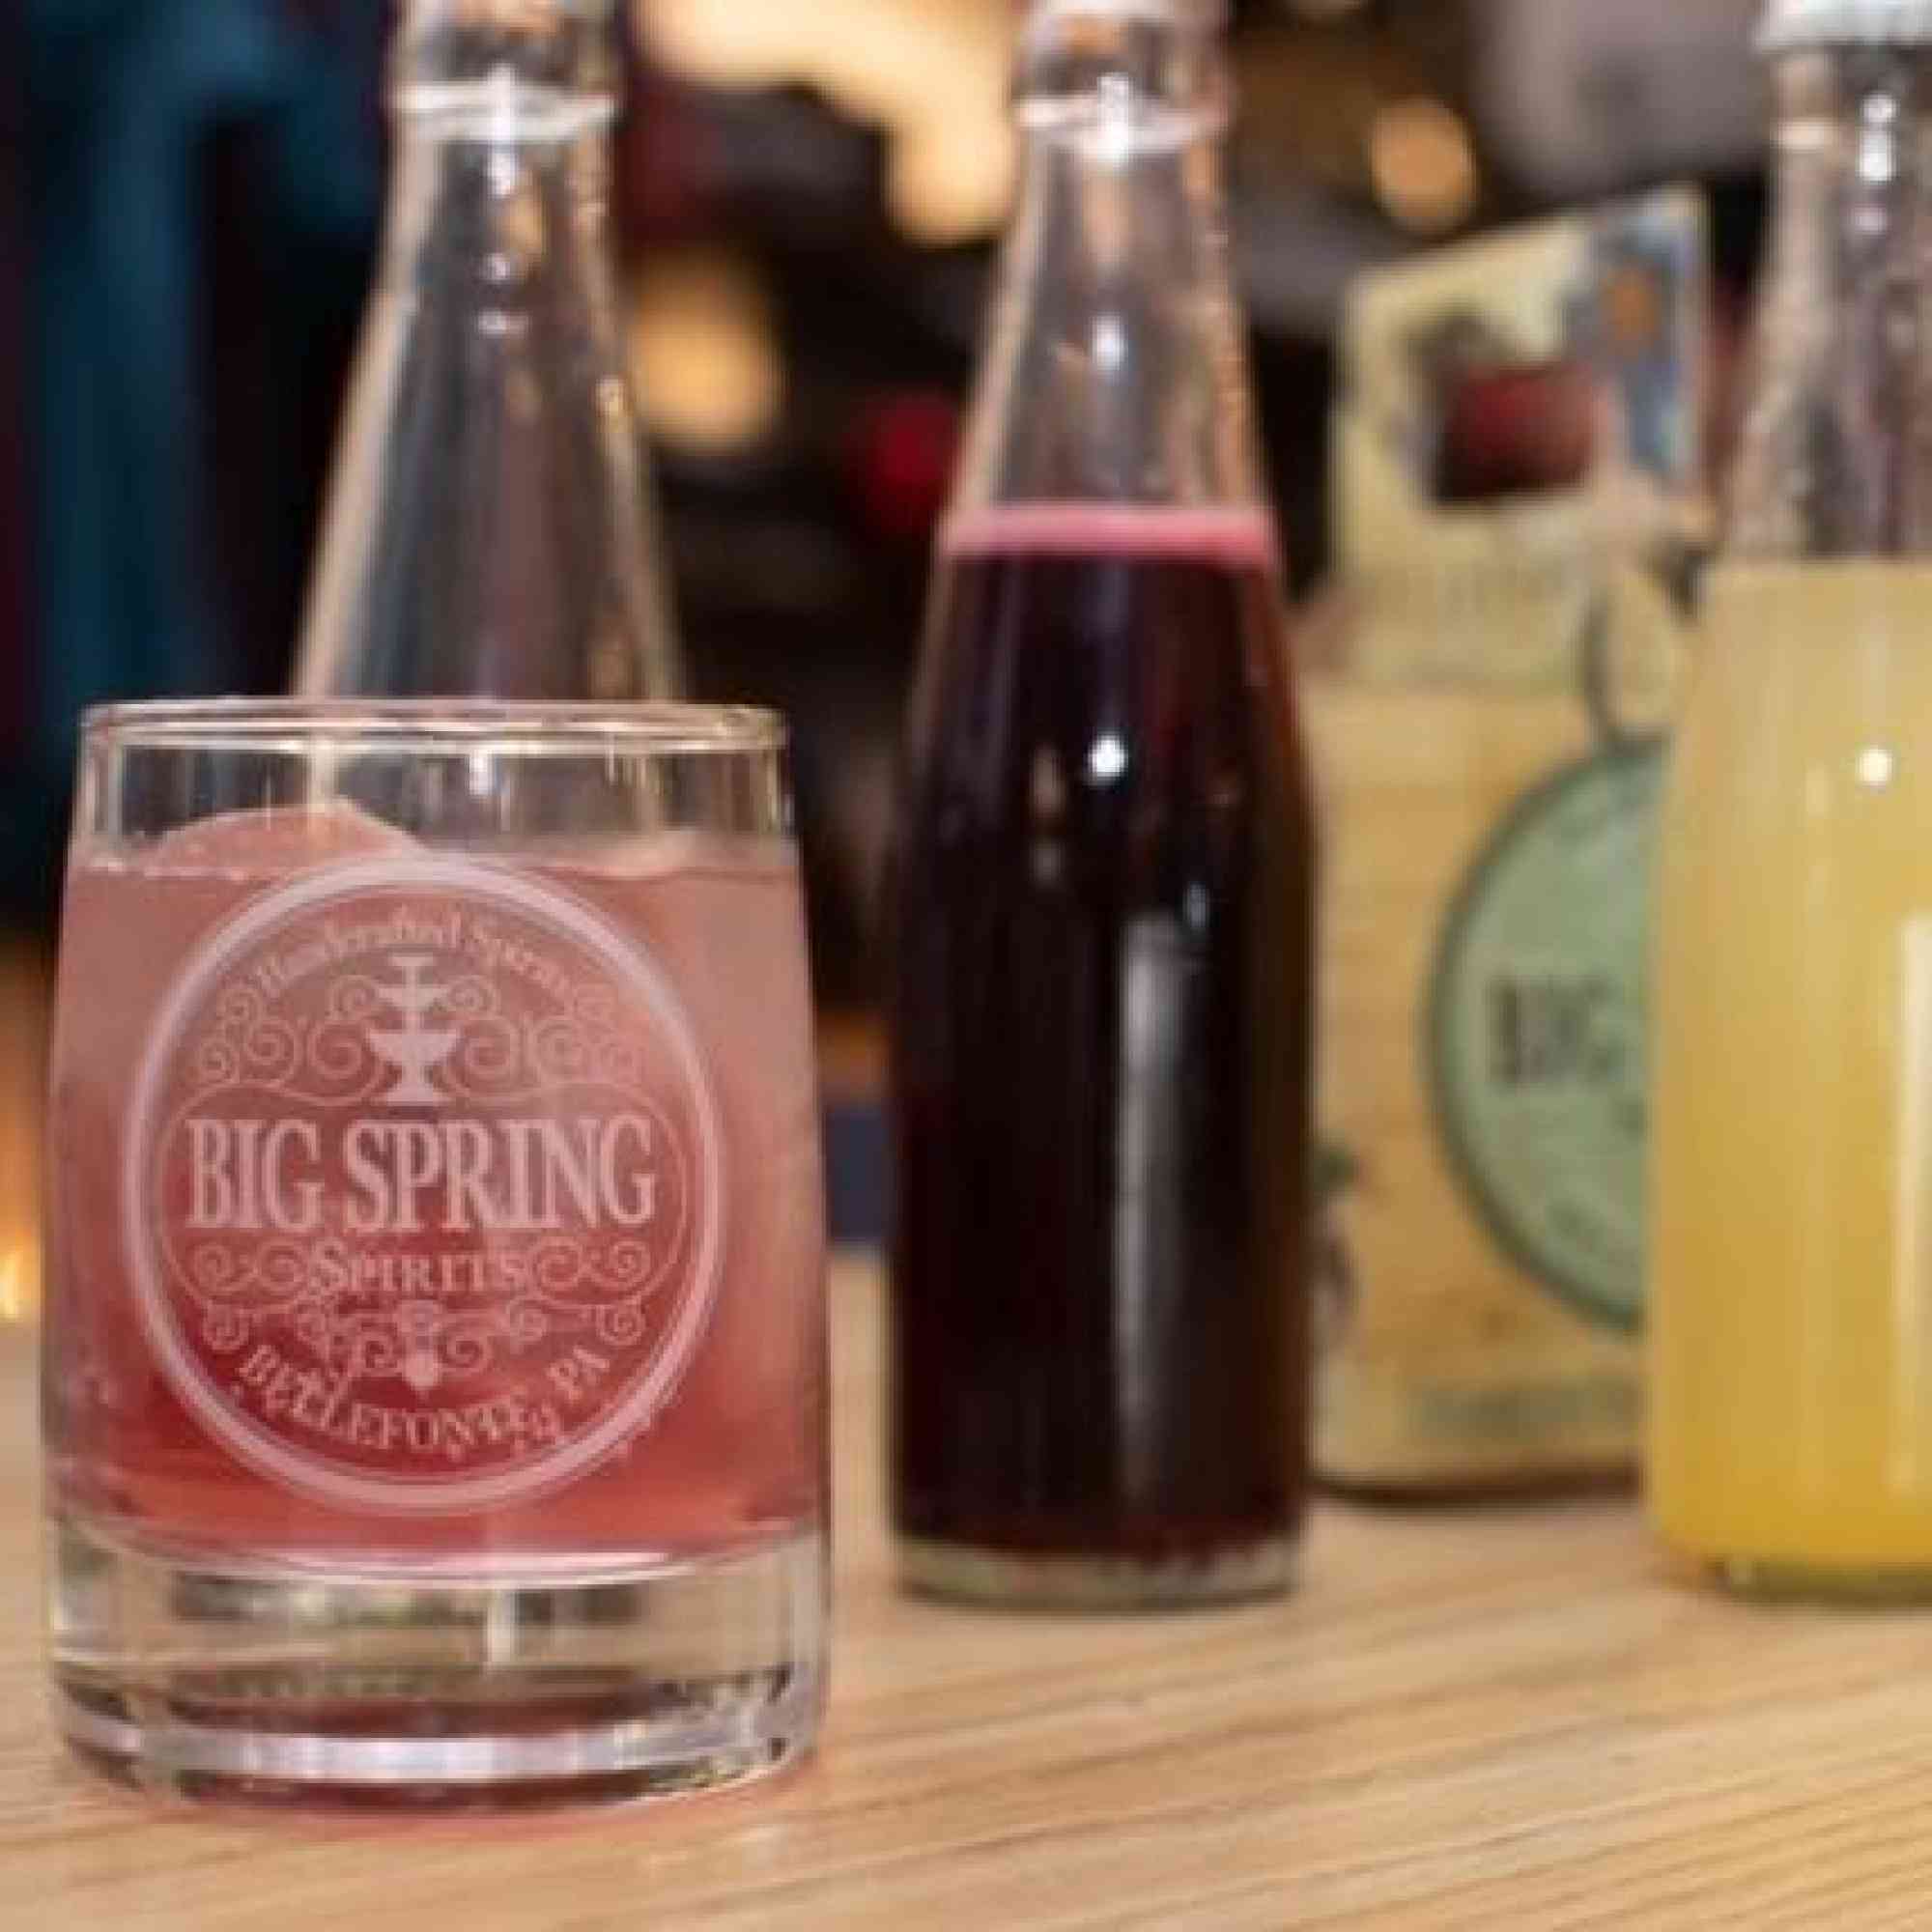 Big Spring Spirits bottled cocktails pic Dec 2020